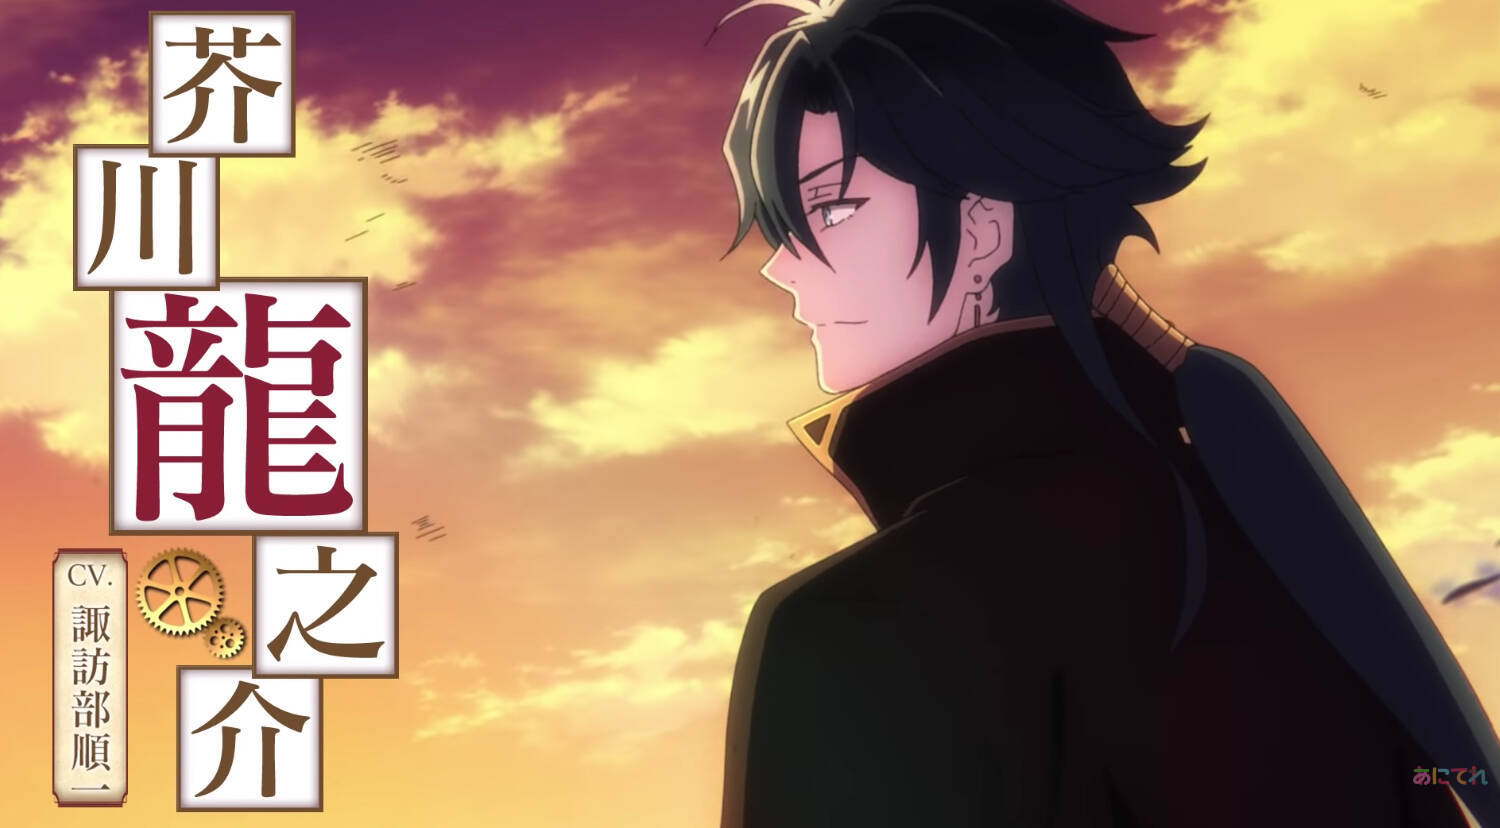 TVアニメ『文アル』OPテーマは“浦島坂田船”が歌う「グッド・バイ」に決定＆PVも公開！